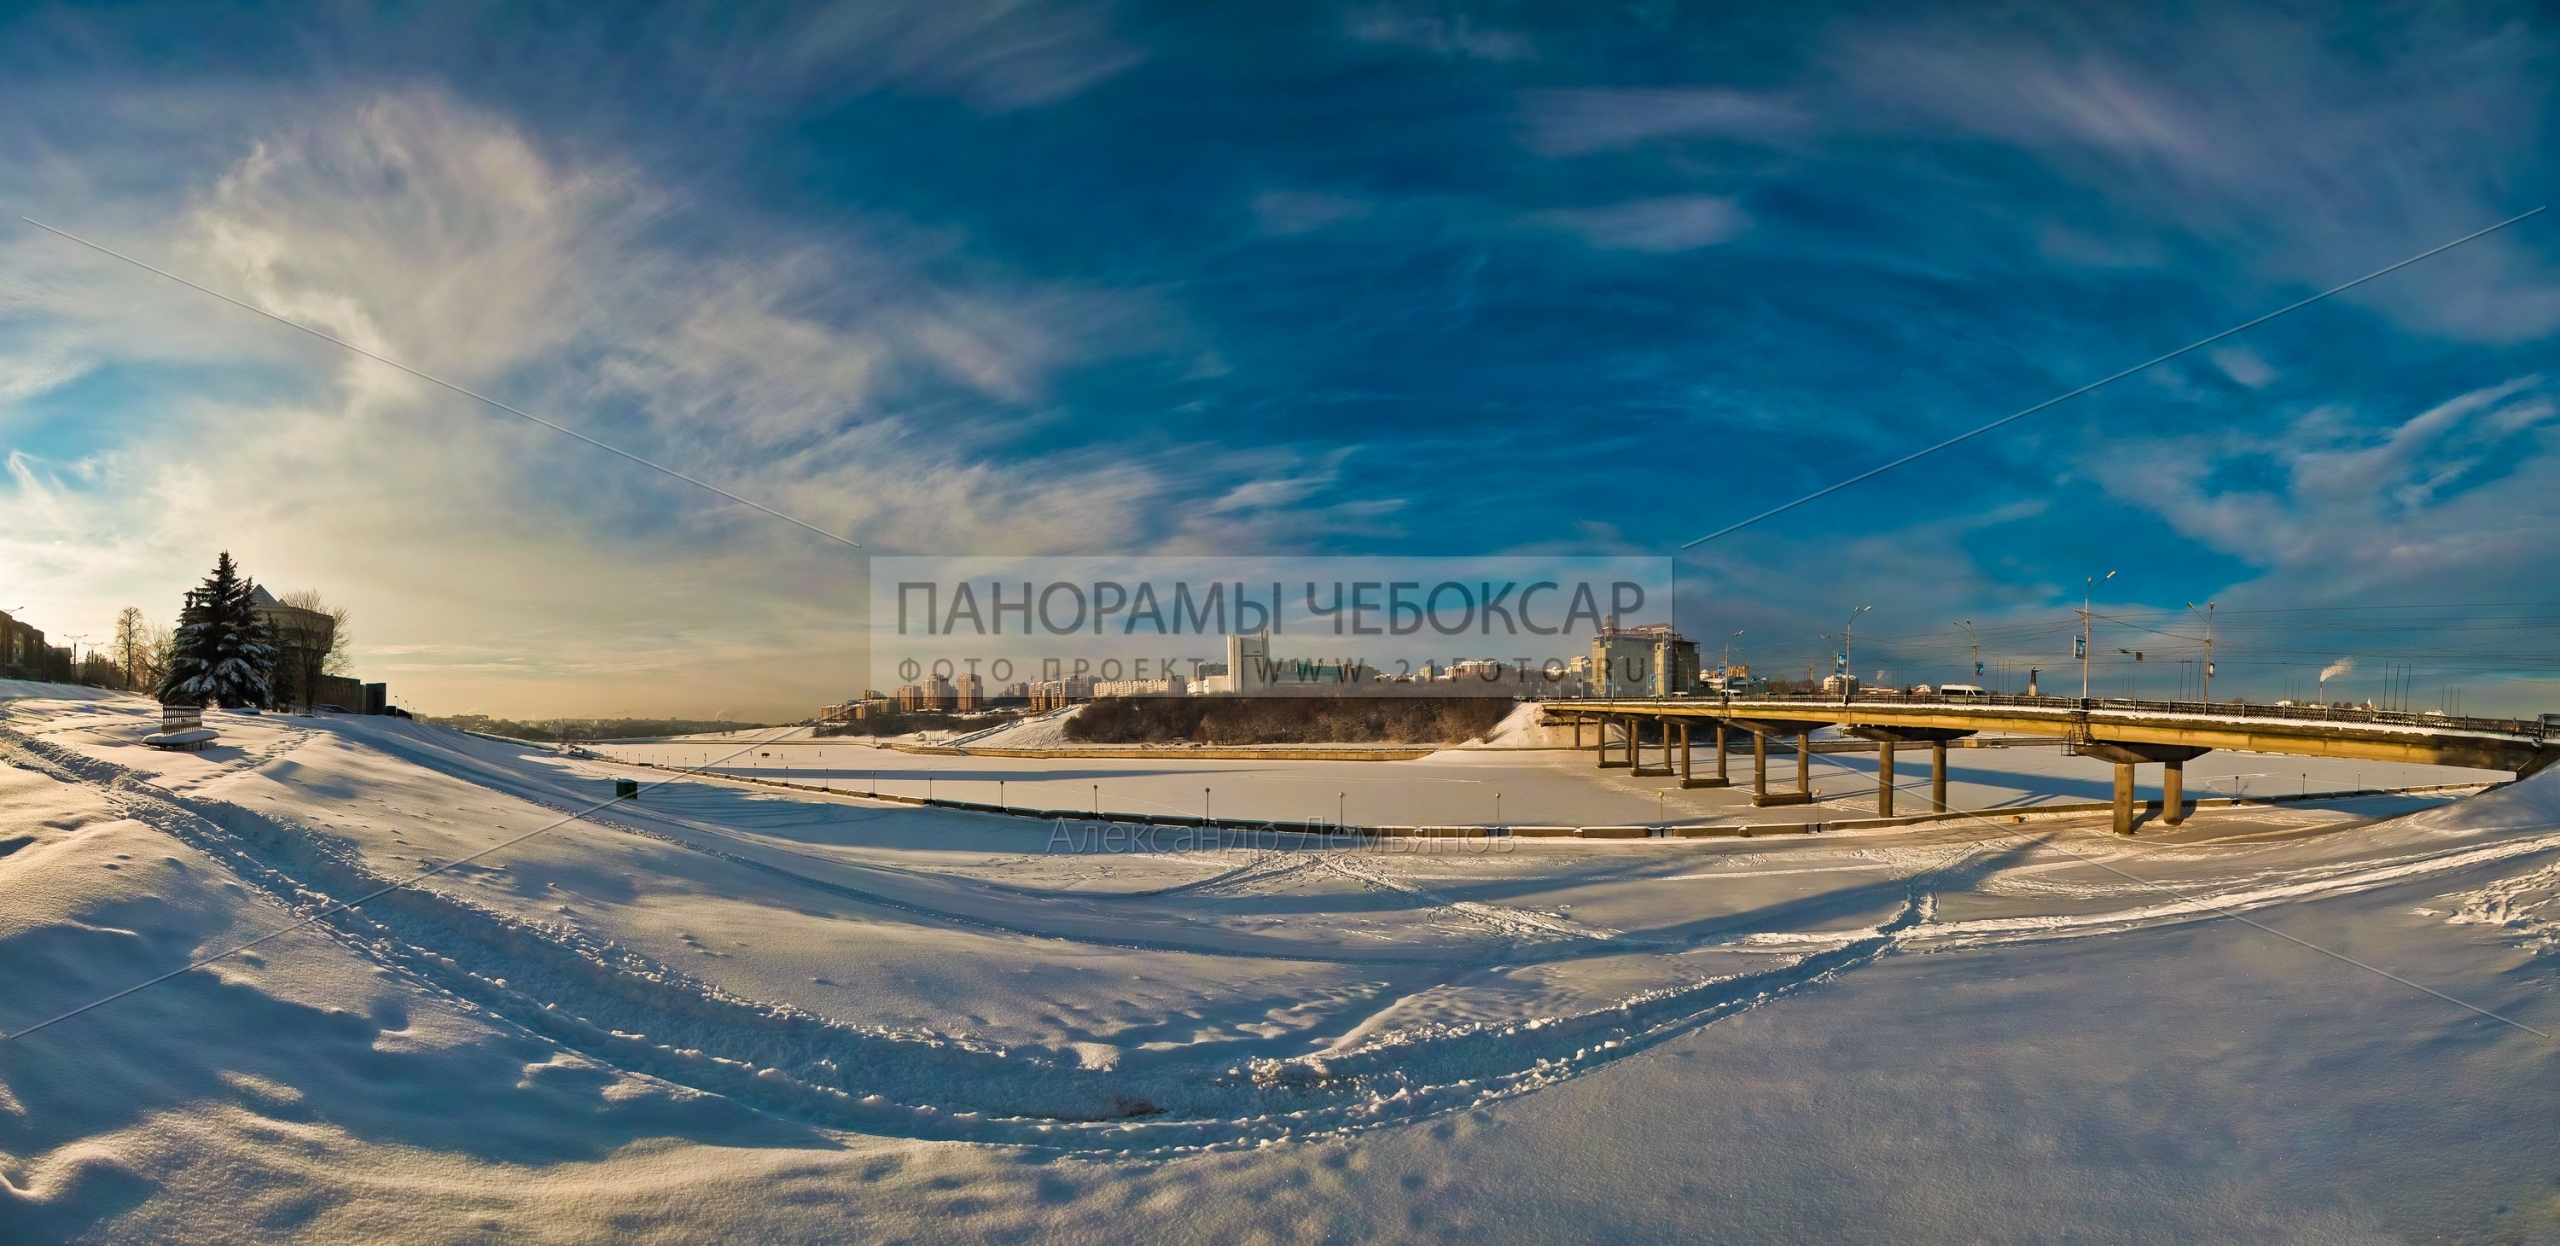 Фото-панорама Чебоксарского залива зимой, вид на тетр оперы и балта и московский мост